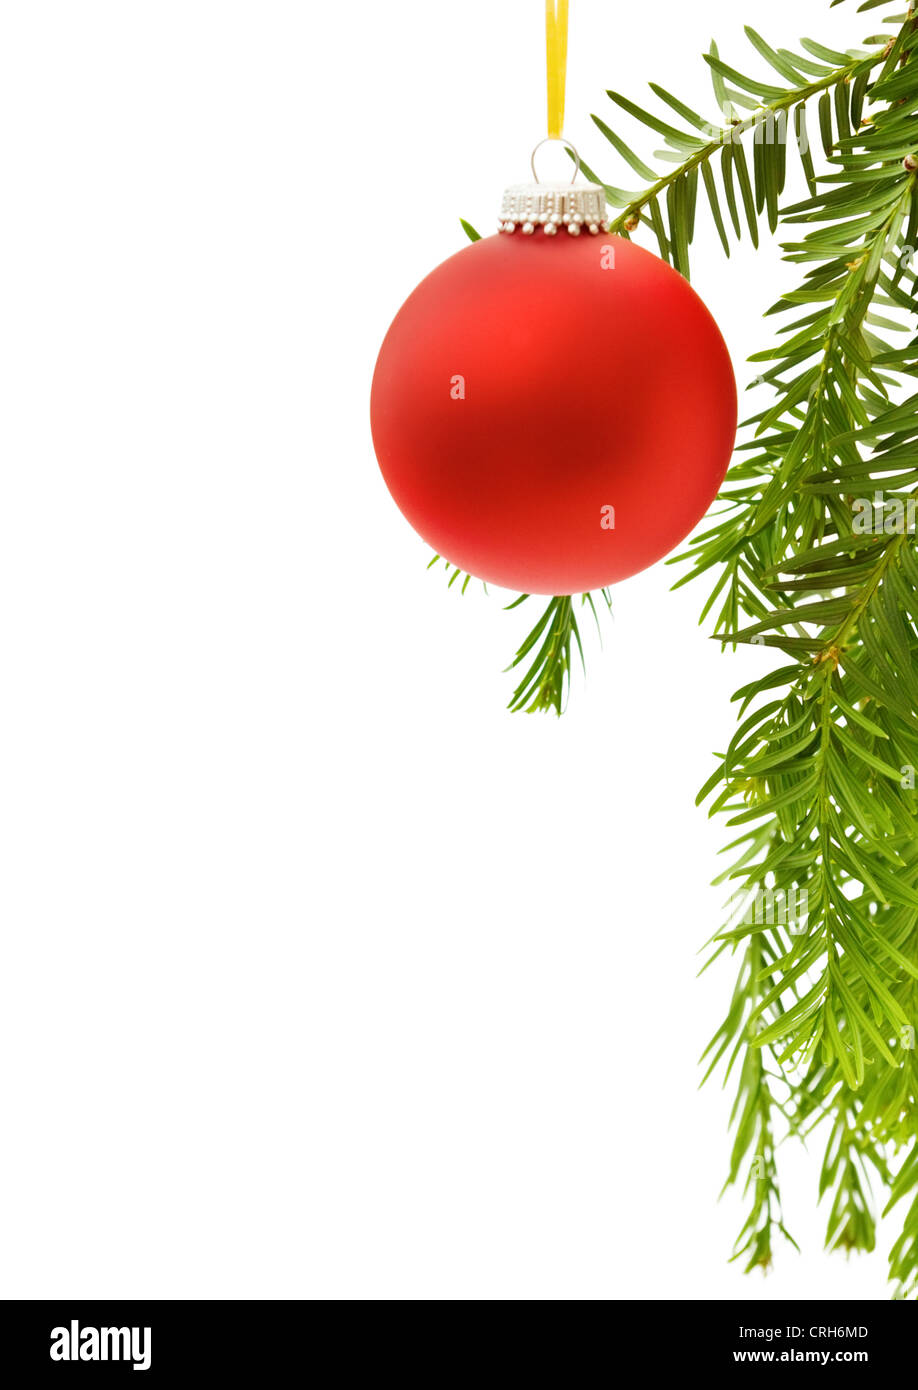 Carte de vœux de Noël avec festive frontière avec babiole rouge et traditionnel pin arbre branche. Isolé sur fond blanc. Banque D'Images